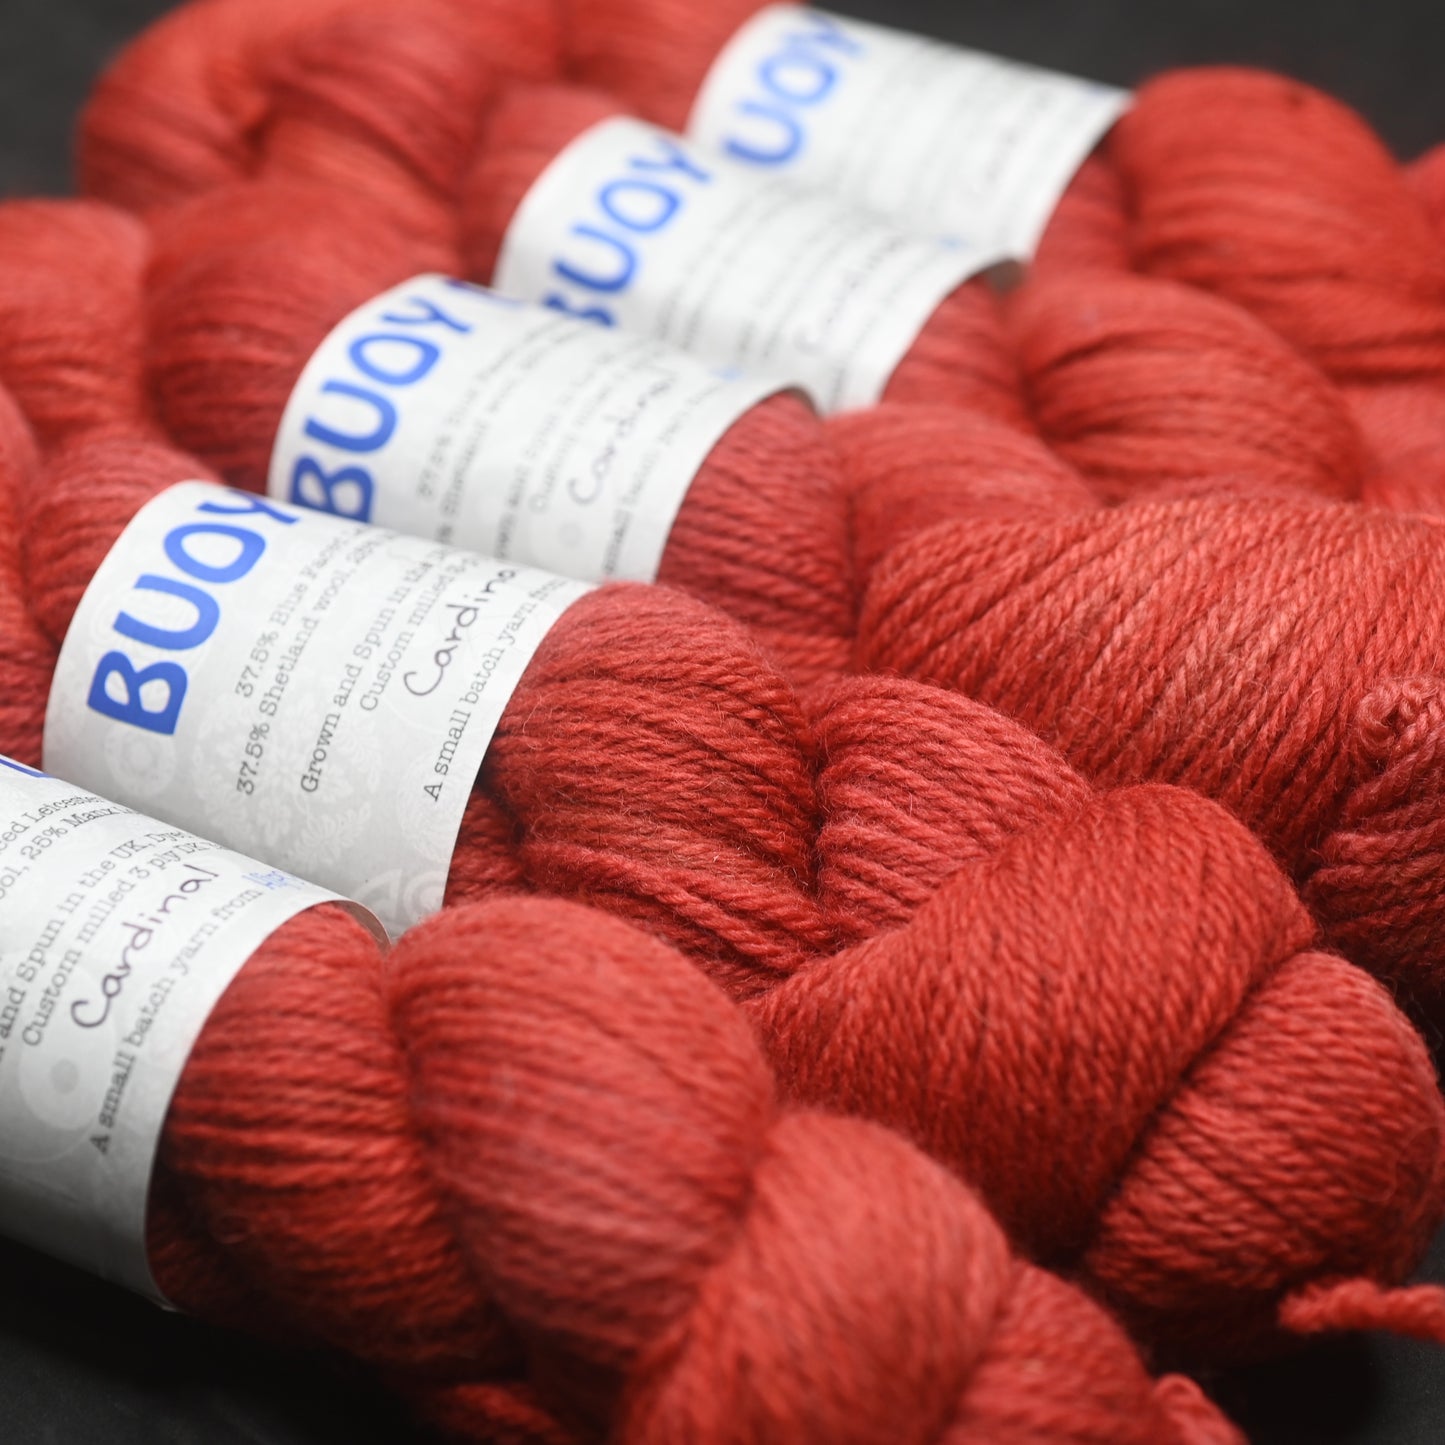 Cardinal on Buoy DK BFL/Shetland/Manx wool yarn 100 g